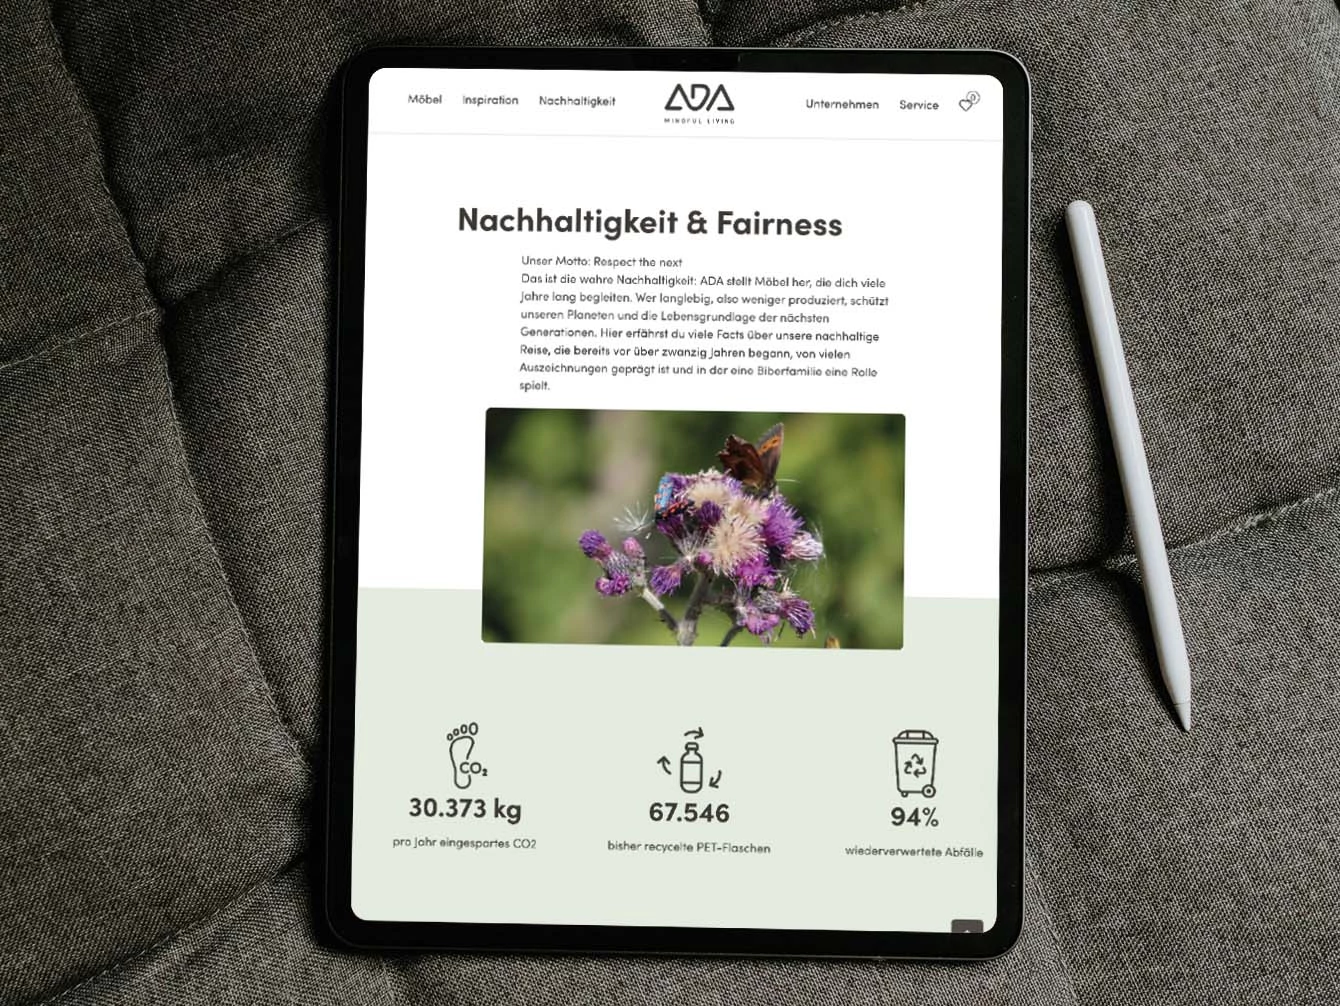 Gezeigt wird ein Tablet mit der ADA Nachhaltigkeits-Website. Neben dem Tablet liegt ein digitaler Stift.